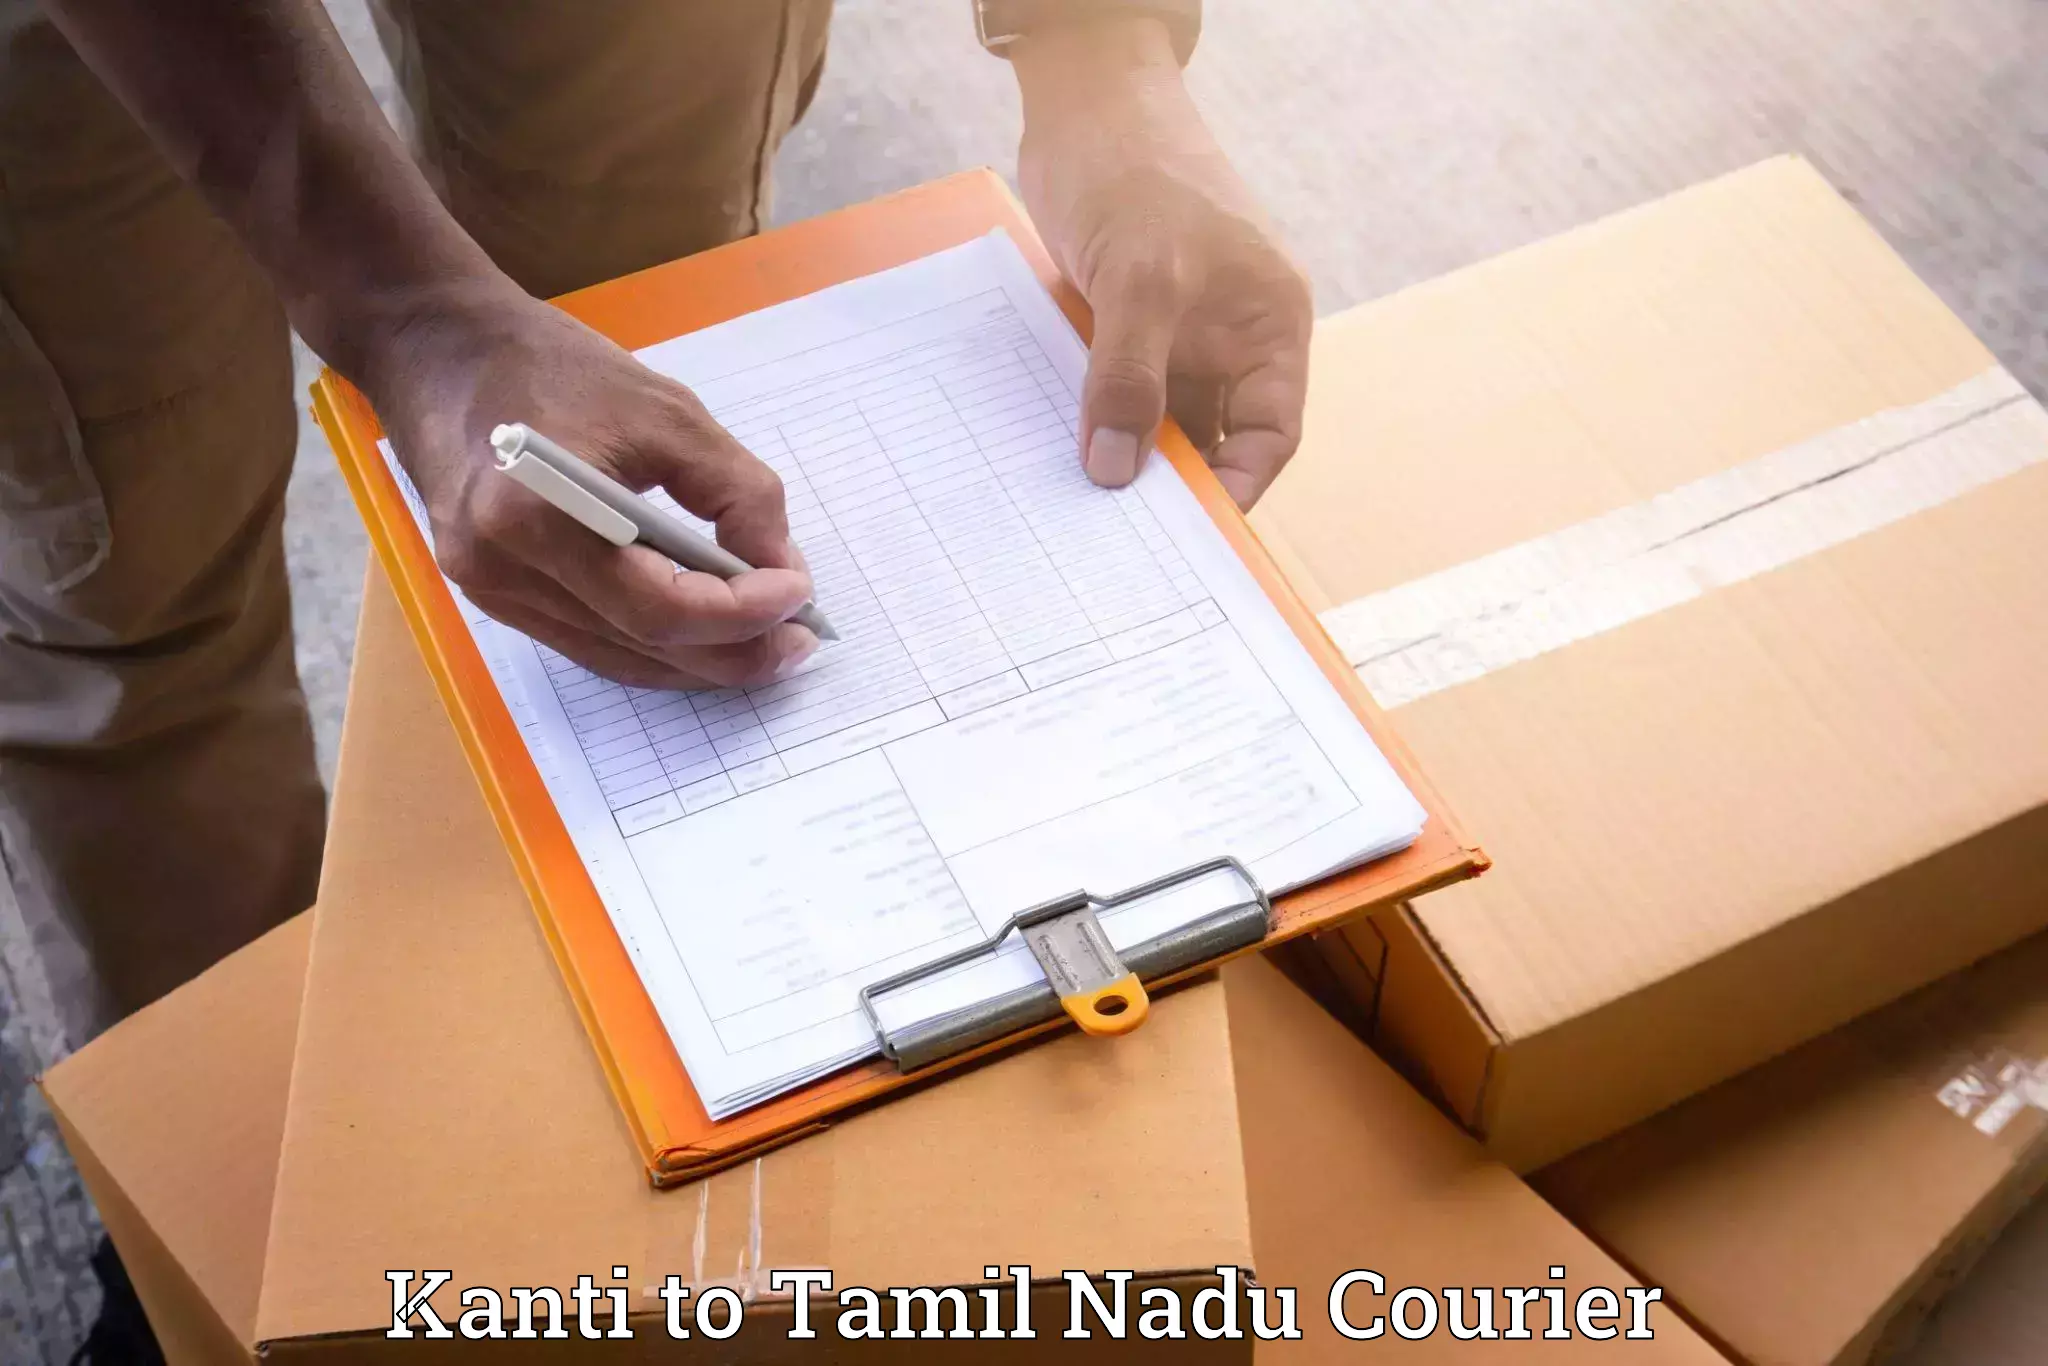 Furniture transport service Kanti to Melur